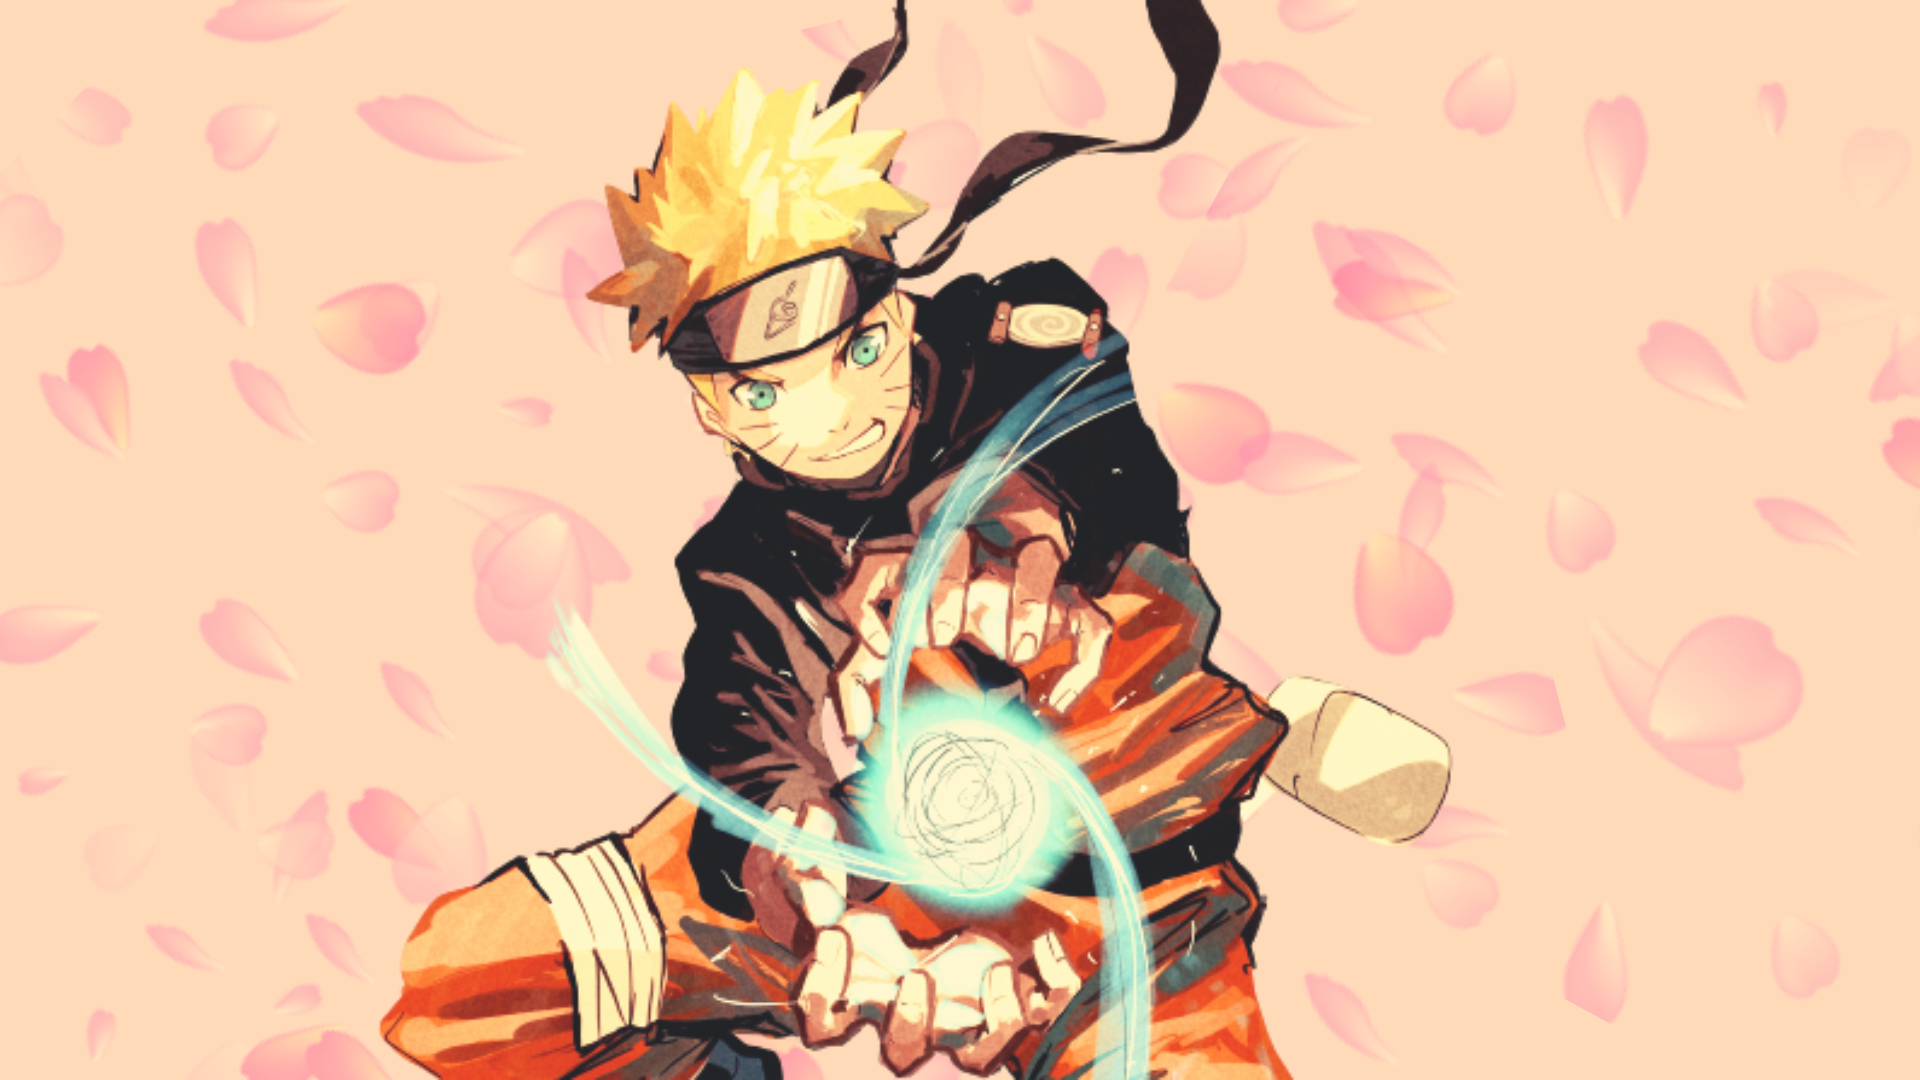 Naruto Uzumaki là một nhân vật ngộ nghĩnh và đầy tính cách. Với những biểu cảm kute, những hành động đáng yêu của Naruto, bạn sẽ không khỏi cười vô tư khi sử dụng các hình nền Naruto đáng yêu này. Hãy tải và cập nhật ngay để tận hưởng những giây phút tuyệt vời cùng Naruto nhé!